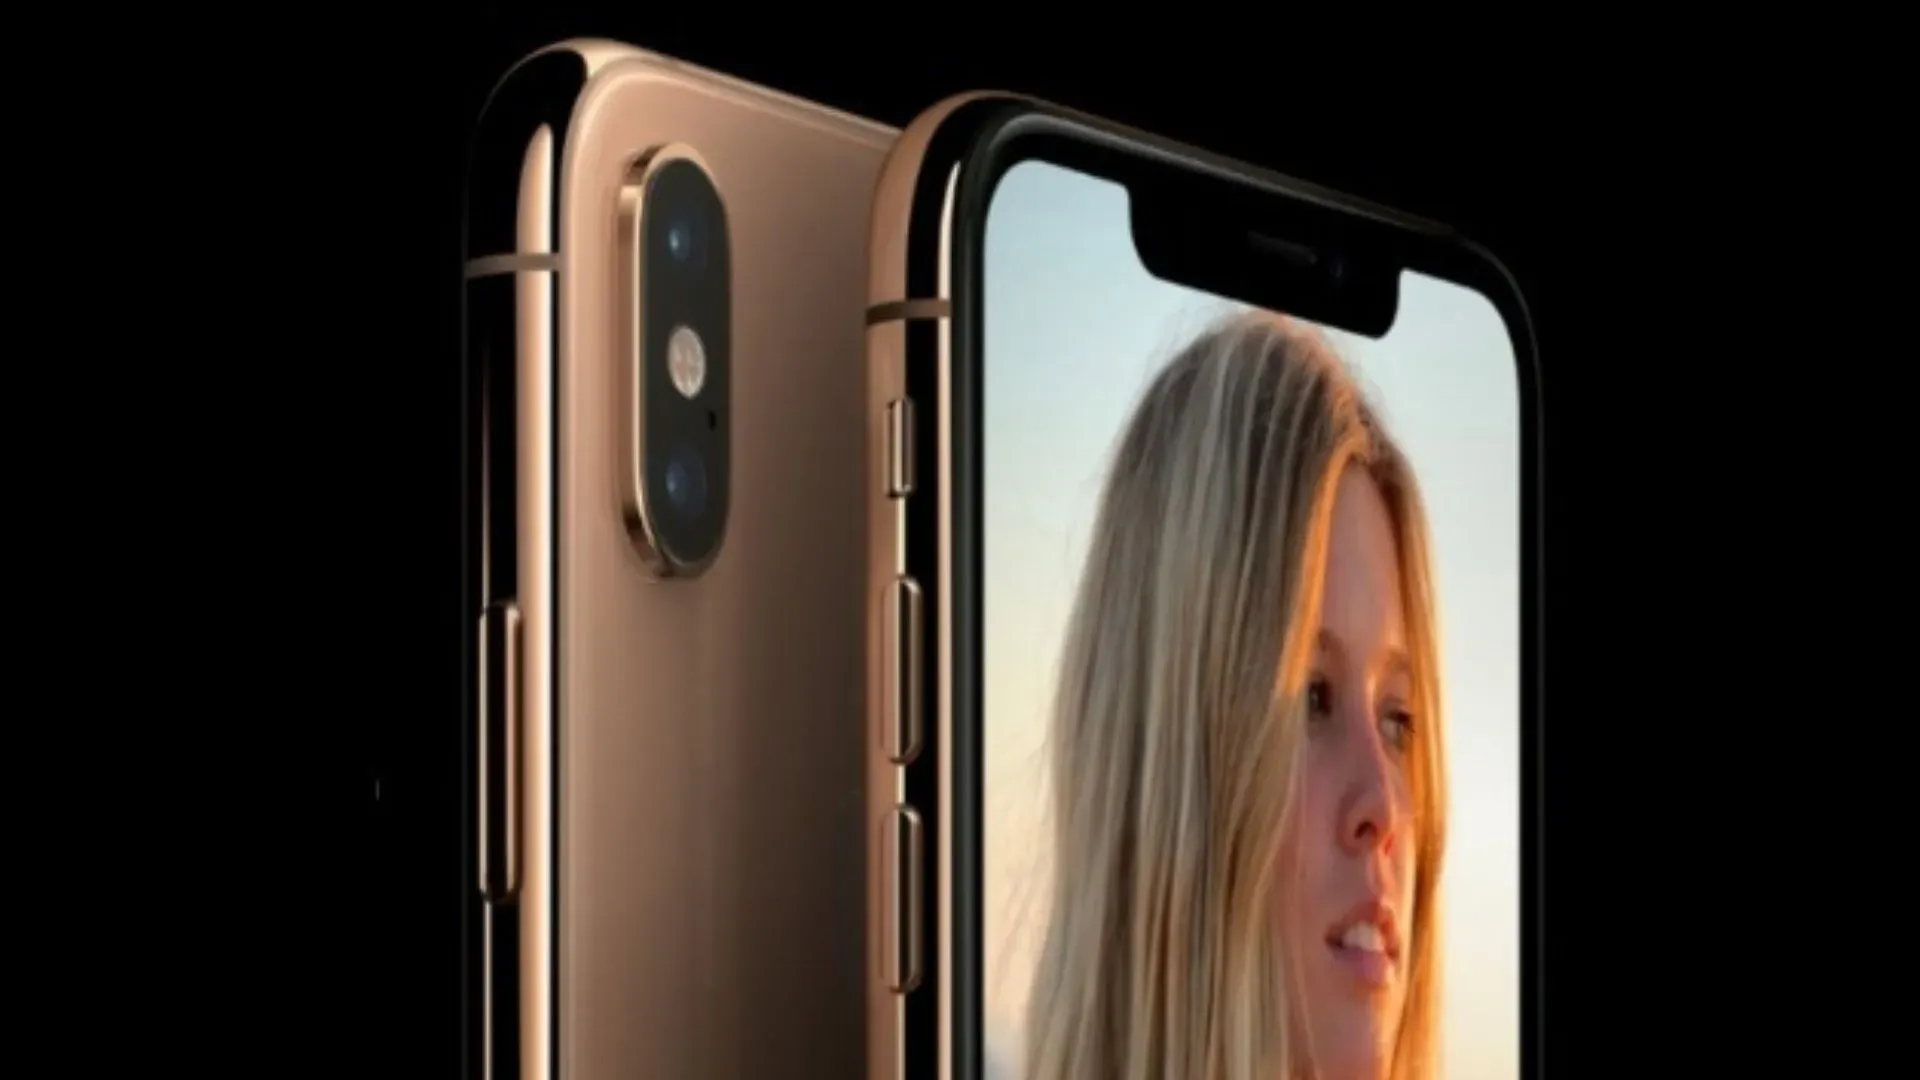 iPhone SE vs iPhone 5s: veja a comparação entre estes dois celulares -  DeUmZoom